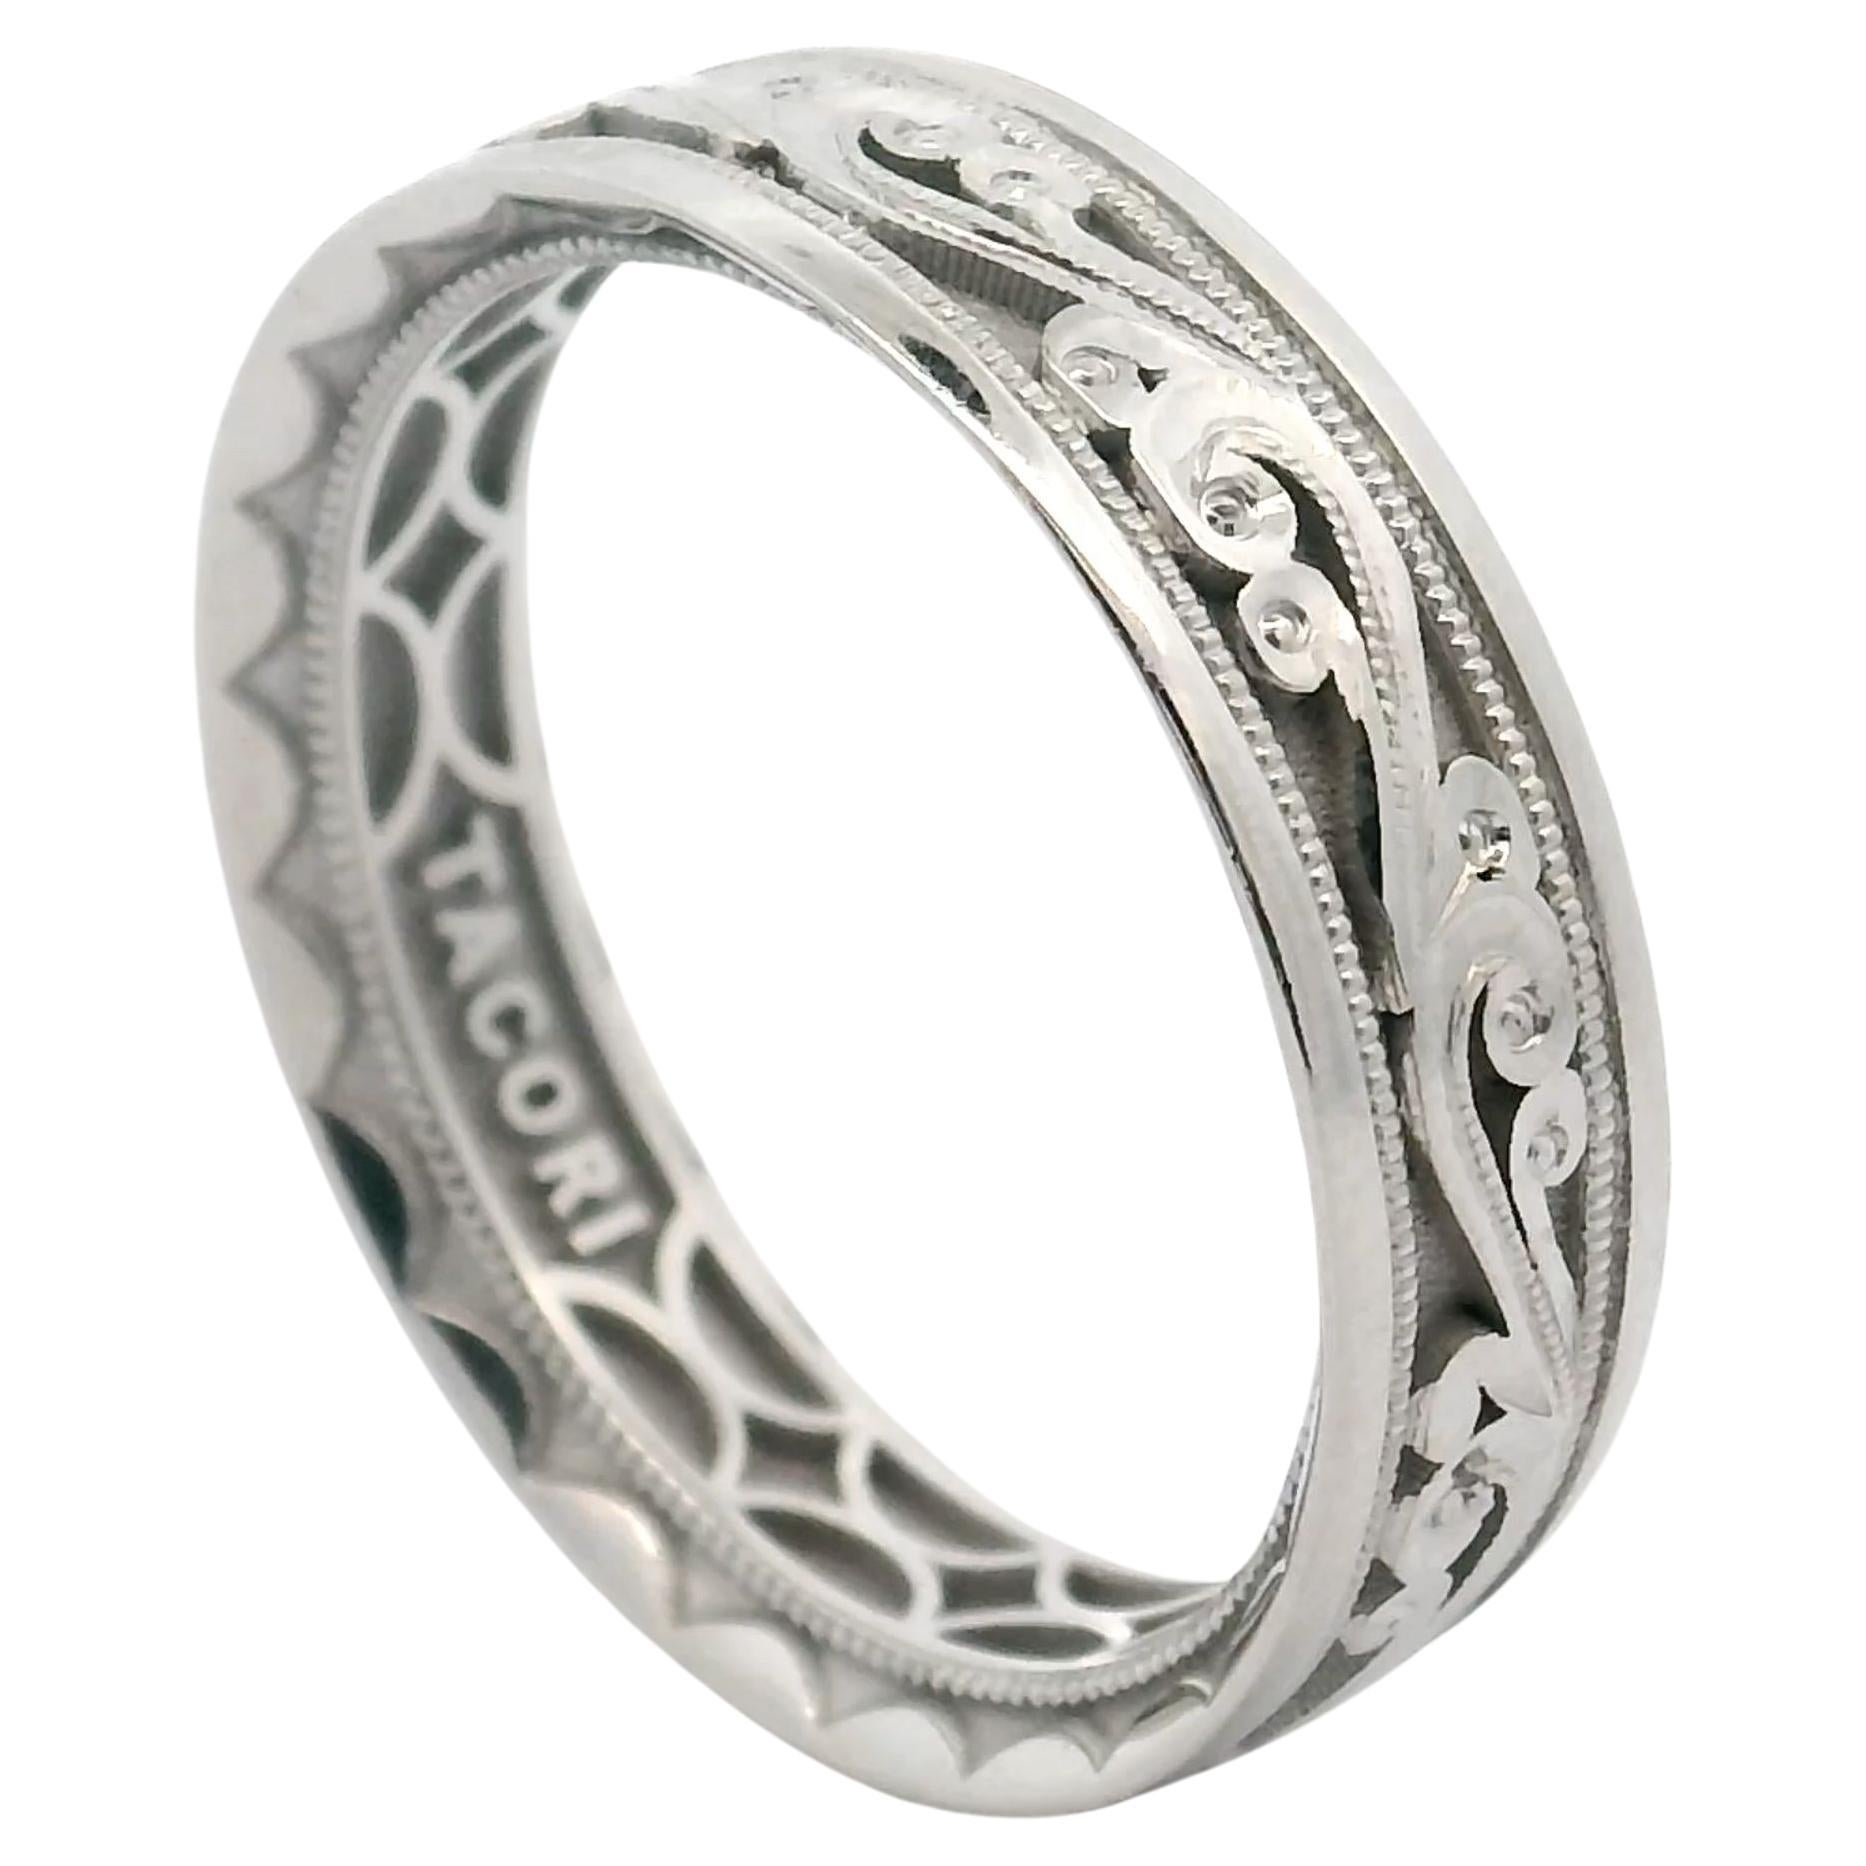 Are Tacori rings handmade?